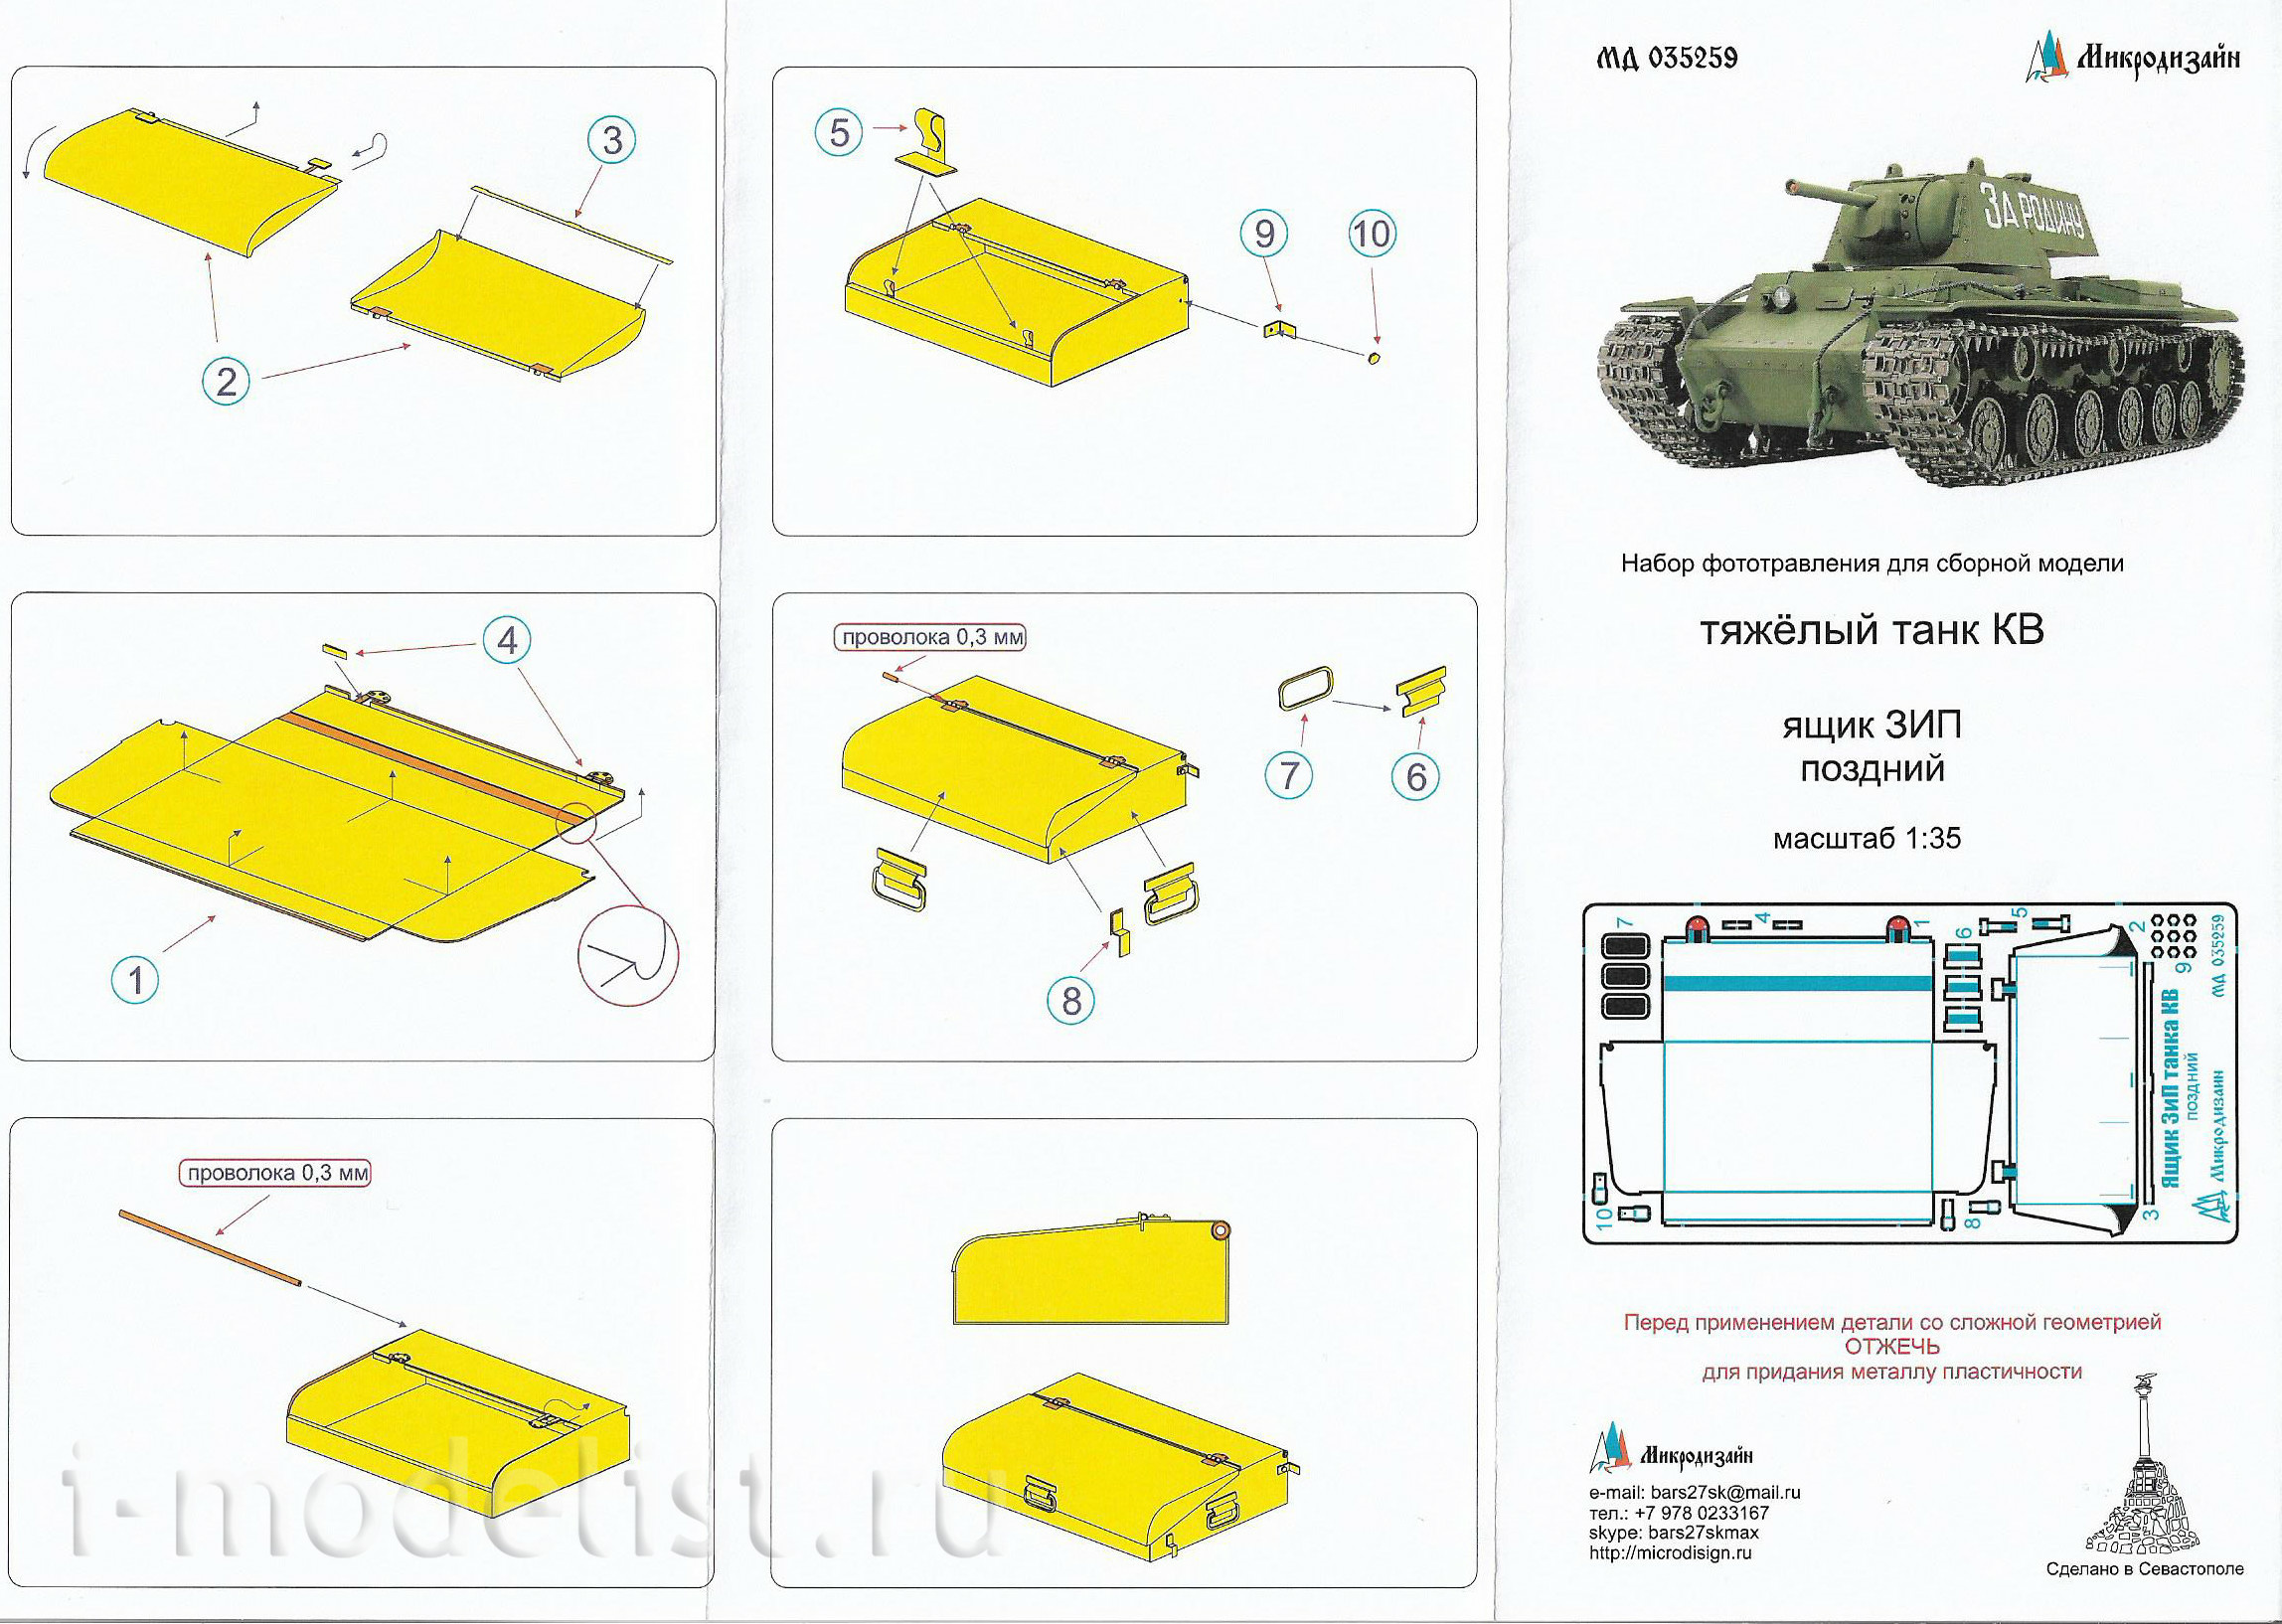 035259 Микродизайн 1/35 Фототравление ящика ЗИП (поздний) для танка КВ